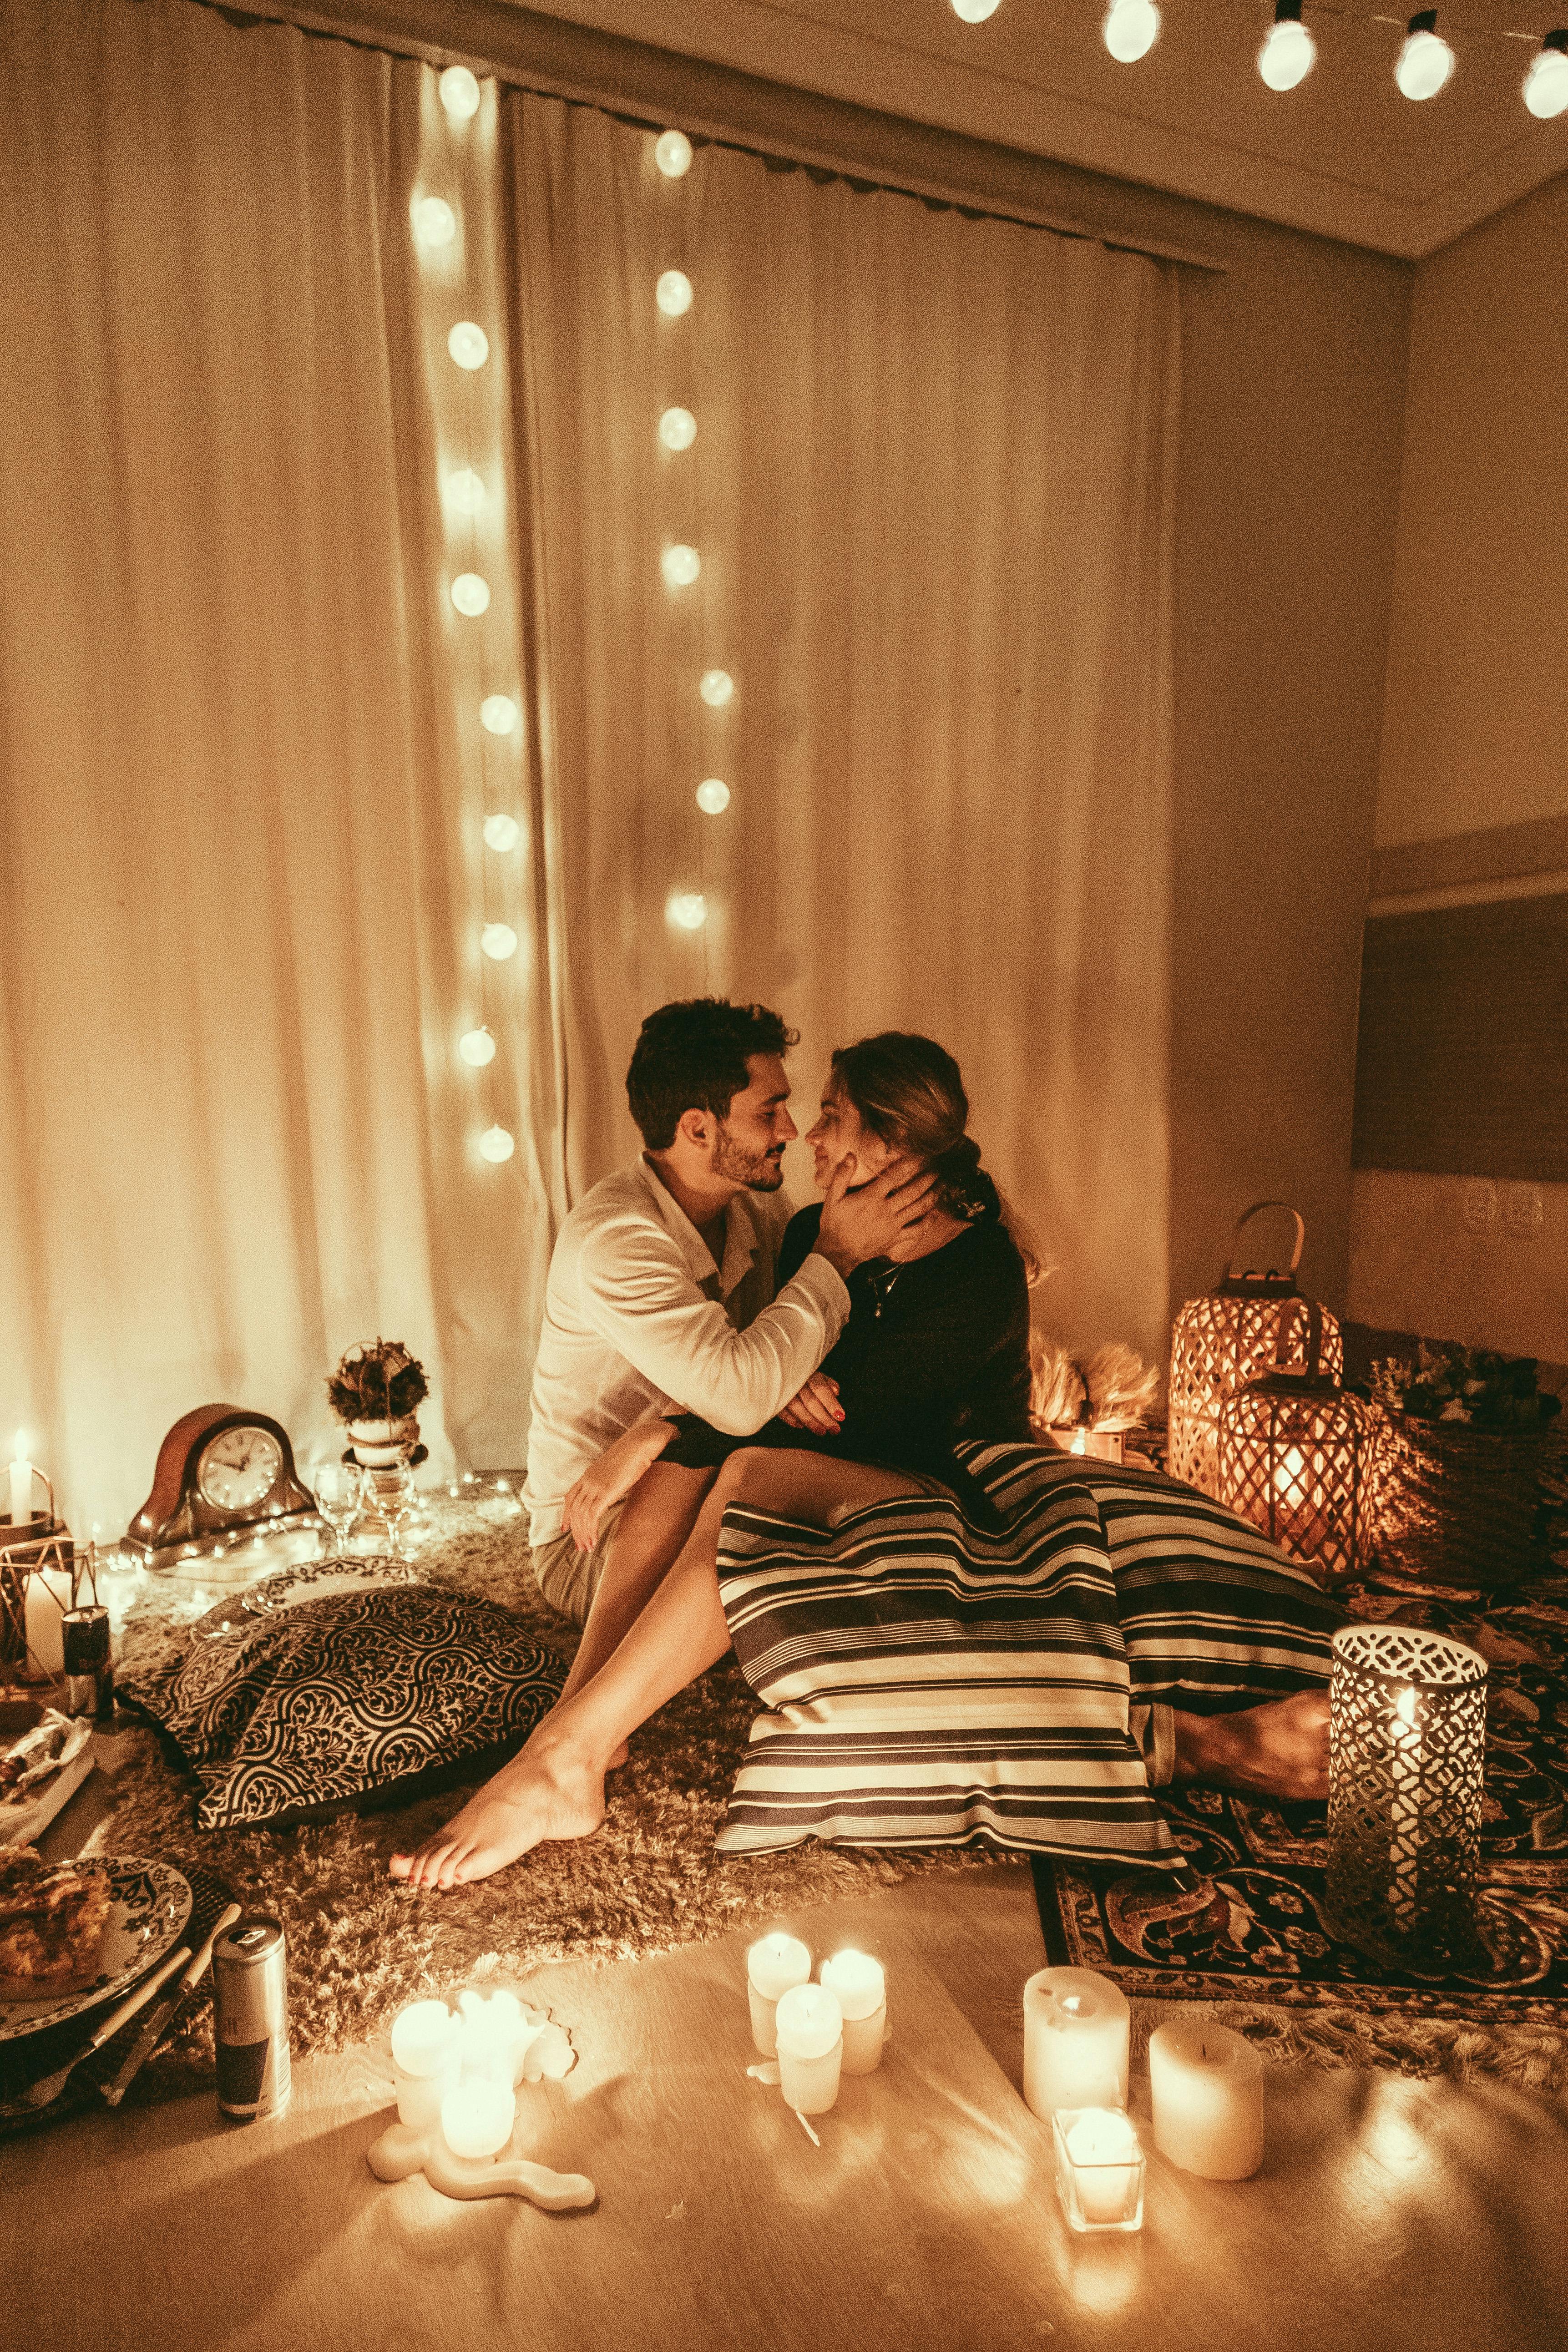 Un couple heureux qui passe une nuit romantique | Source : Pexels